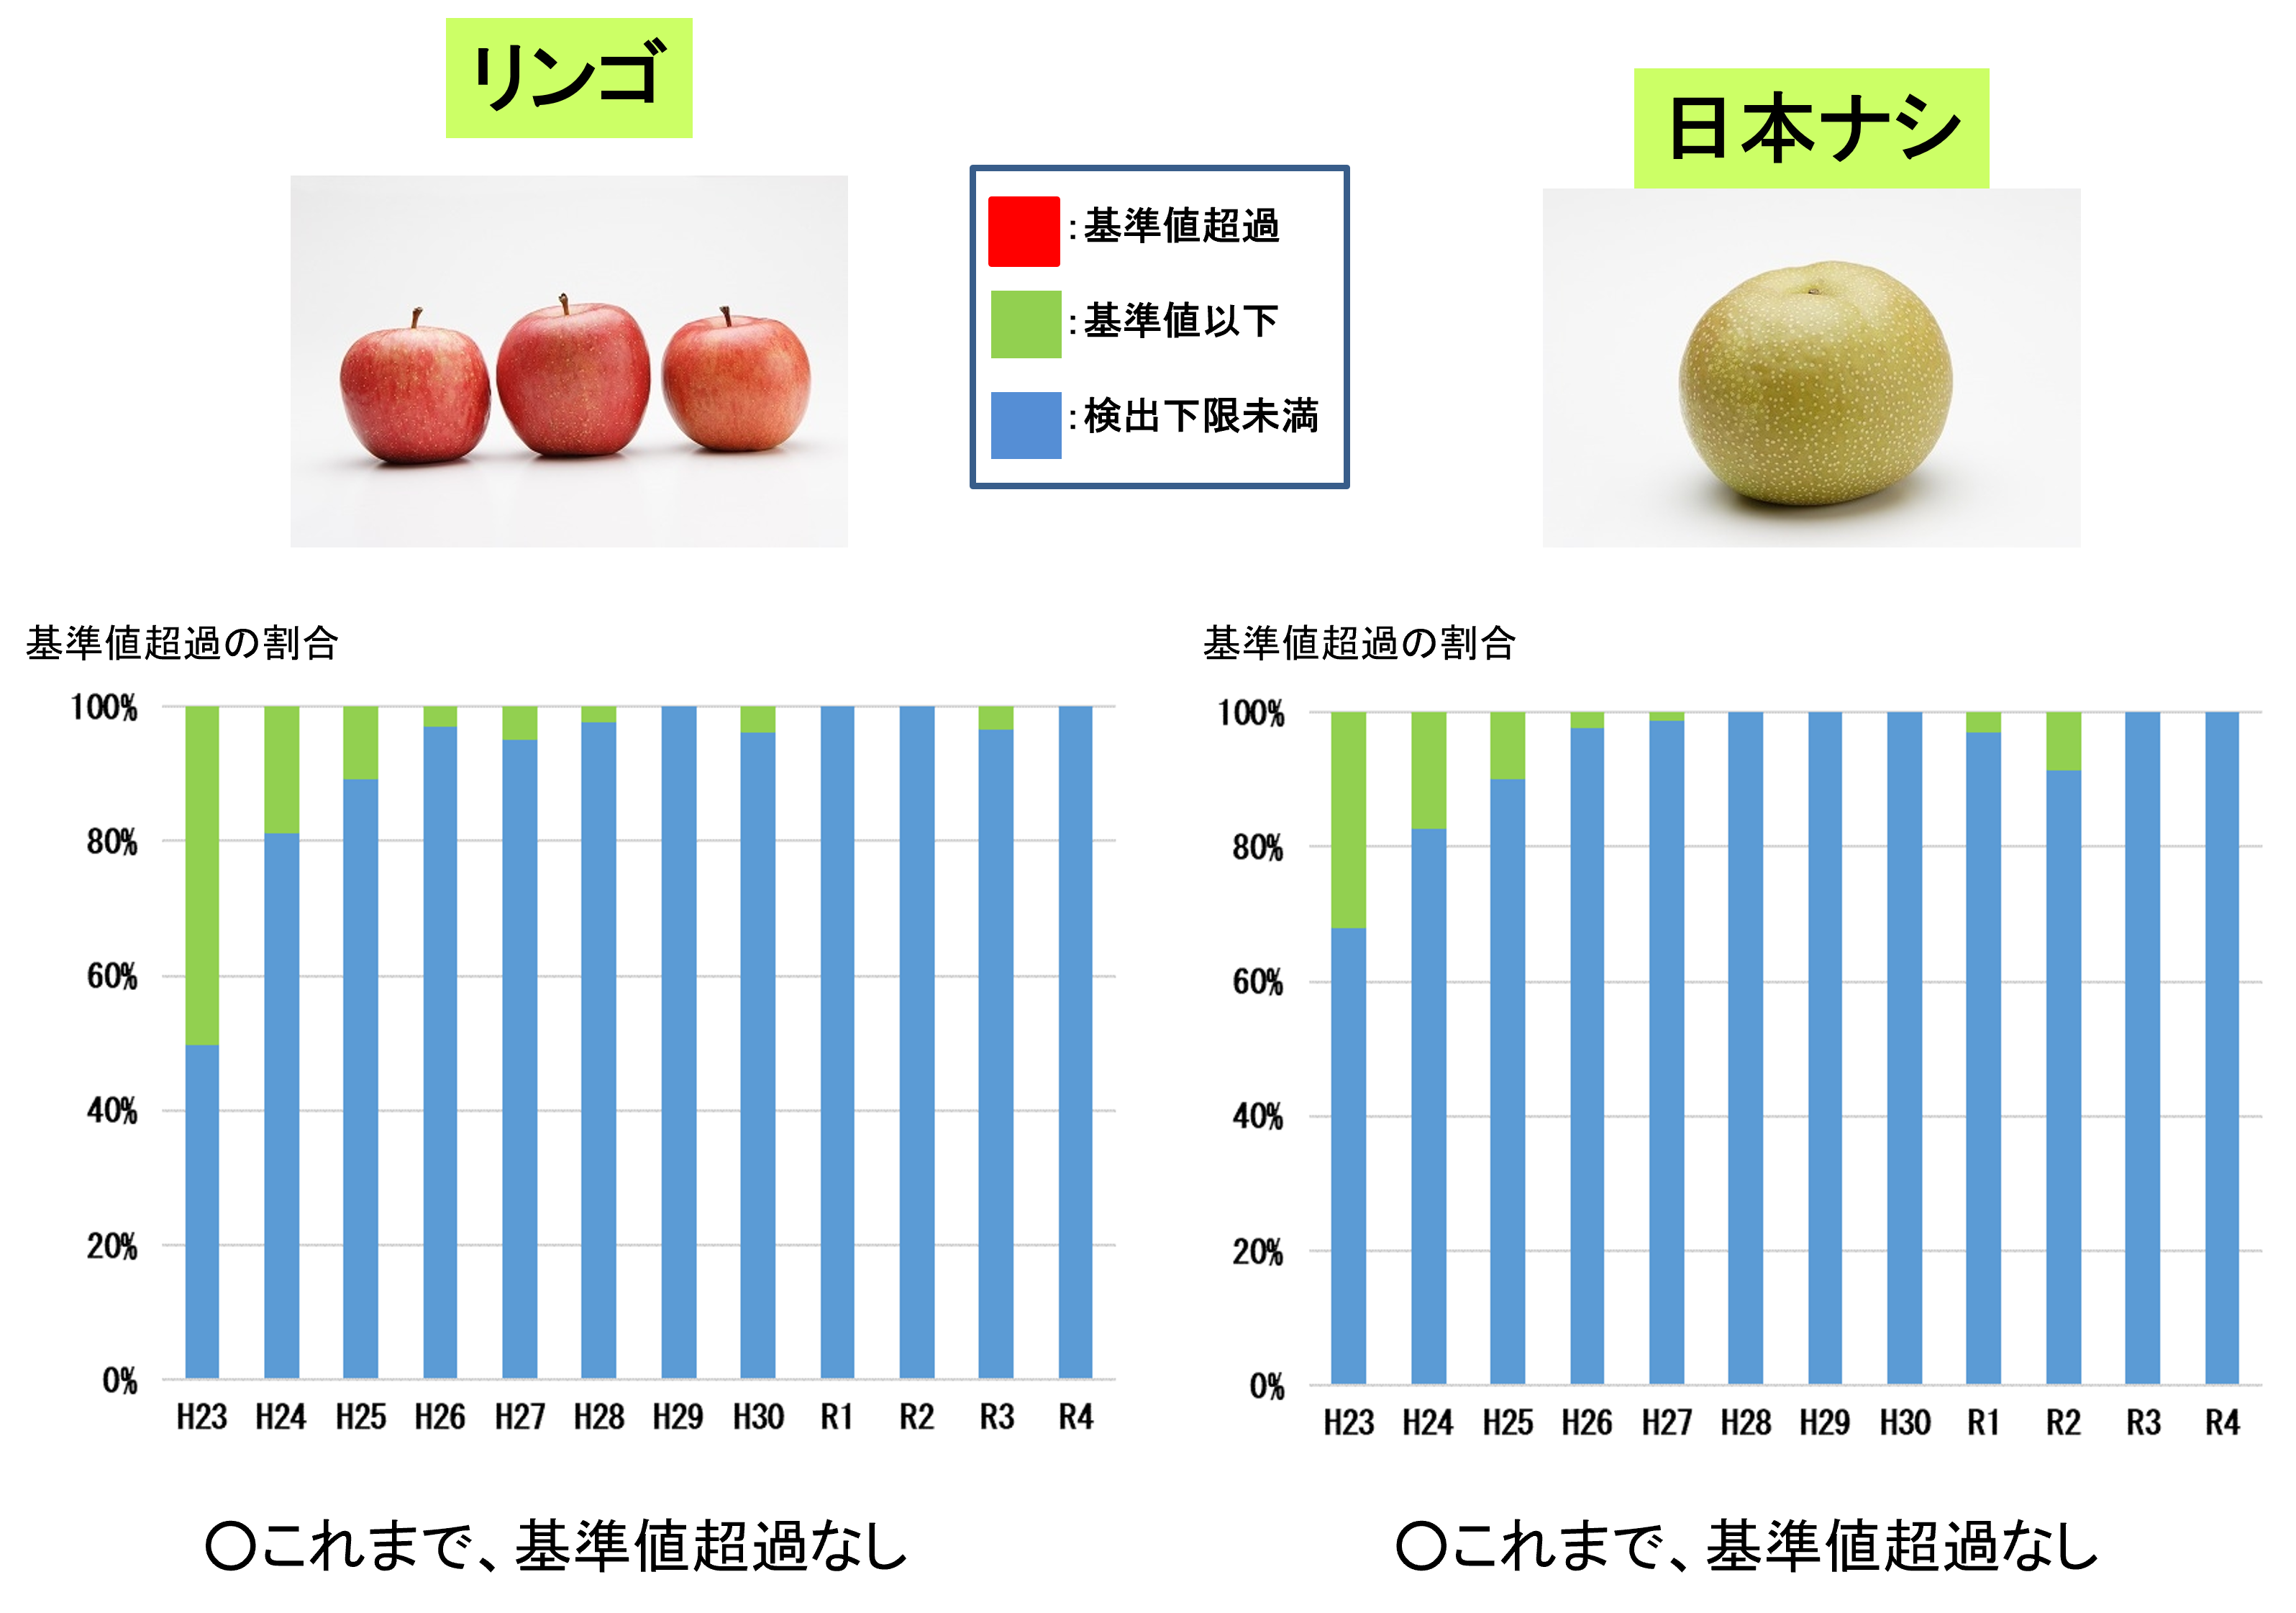 平成23年から令和4年3月までの果実（リンゴ・日本ナシ）の経年変化です。